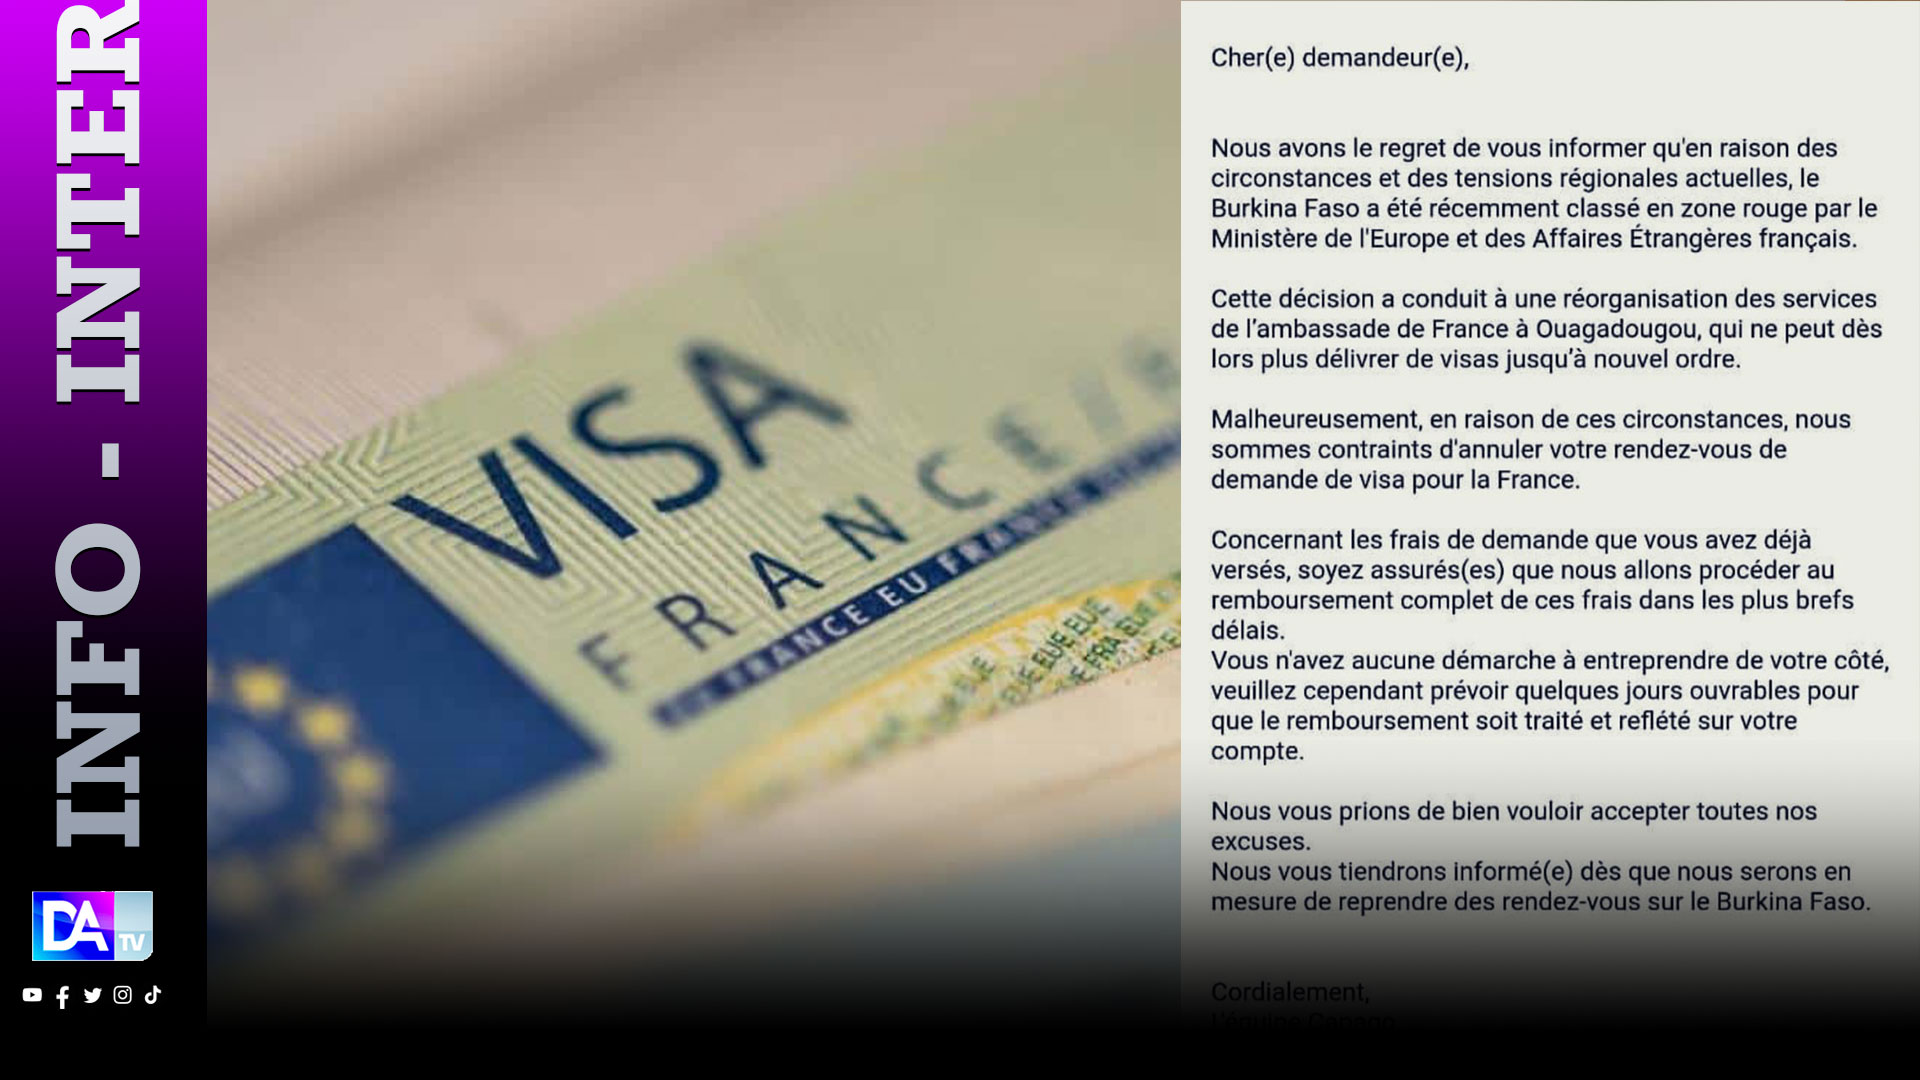 Coopération: La France suspend la délivrance des visas au Burkina jusqu'à nouvel ordre